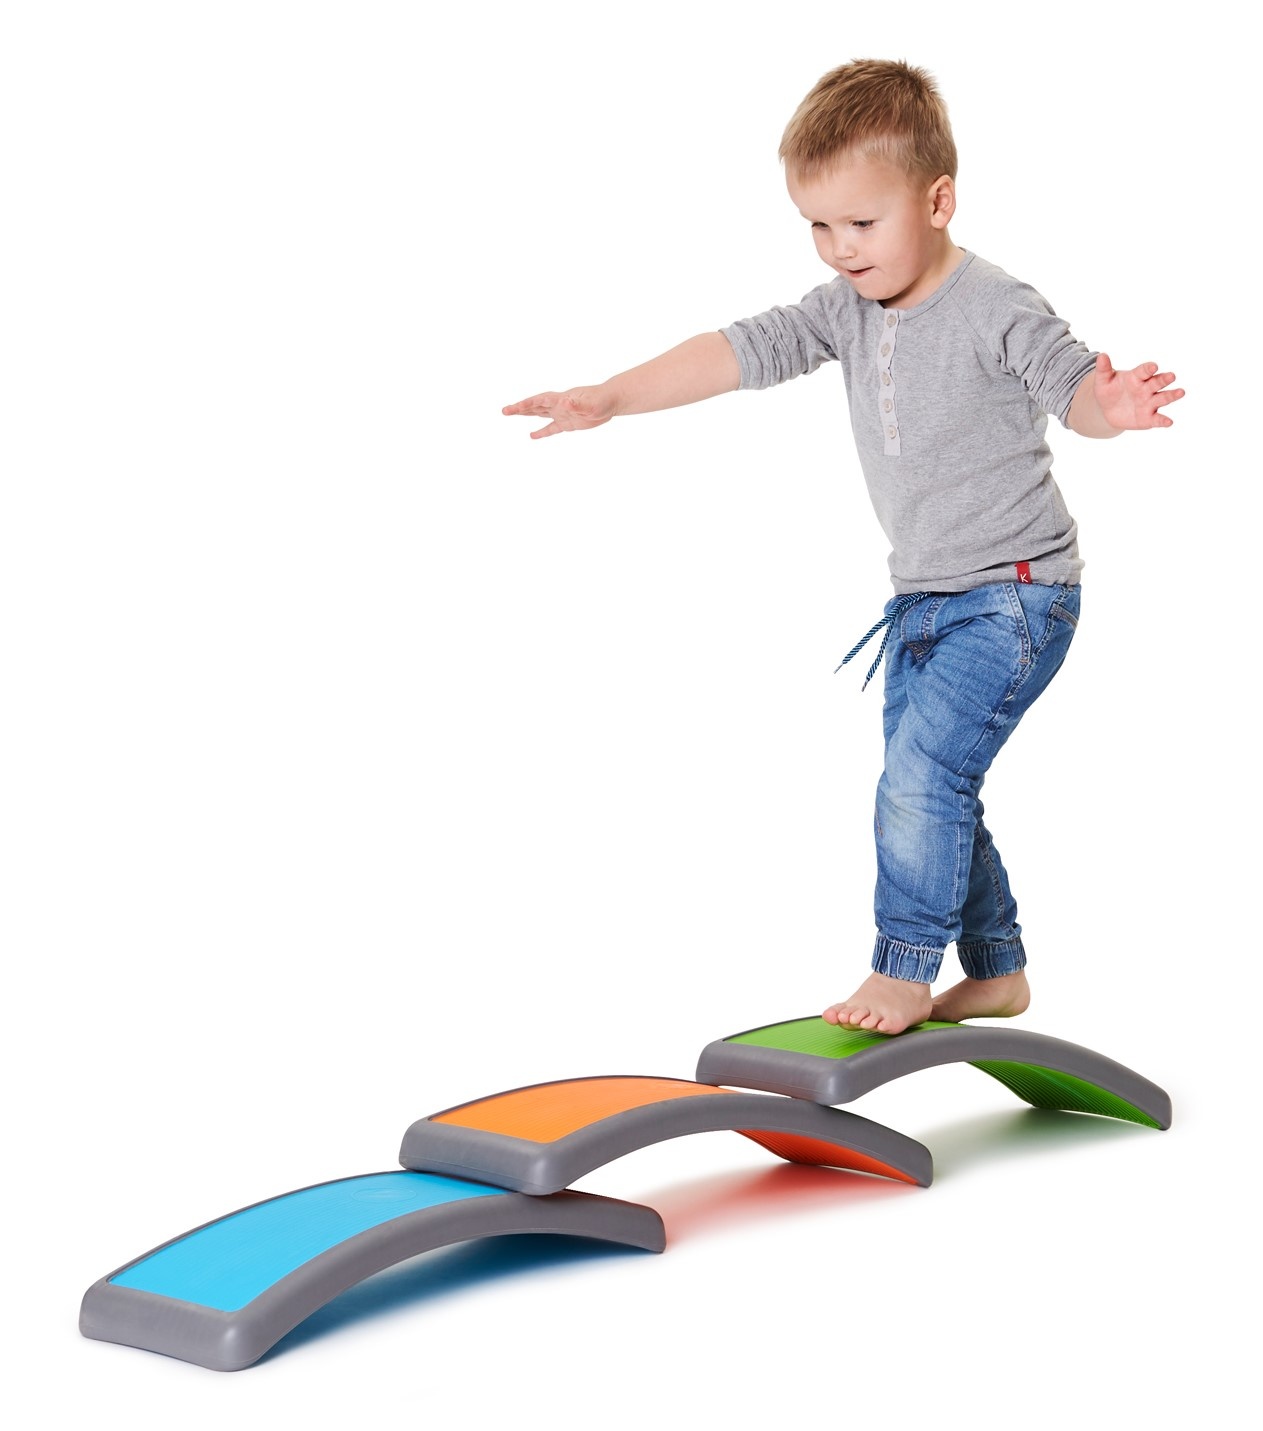 Planche d'équilibre pour enfants